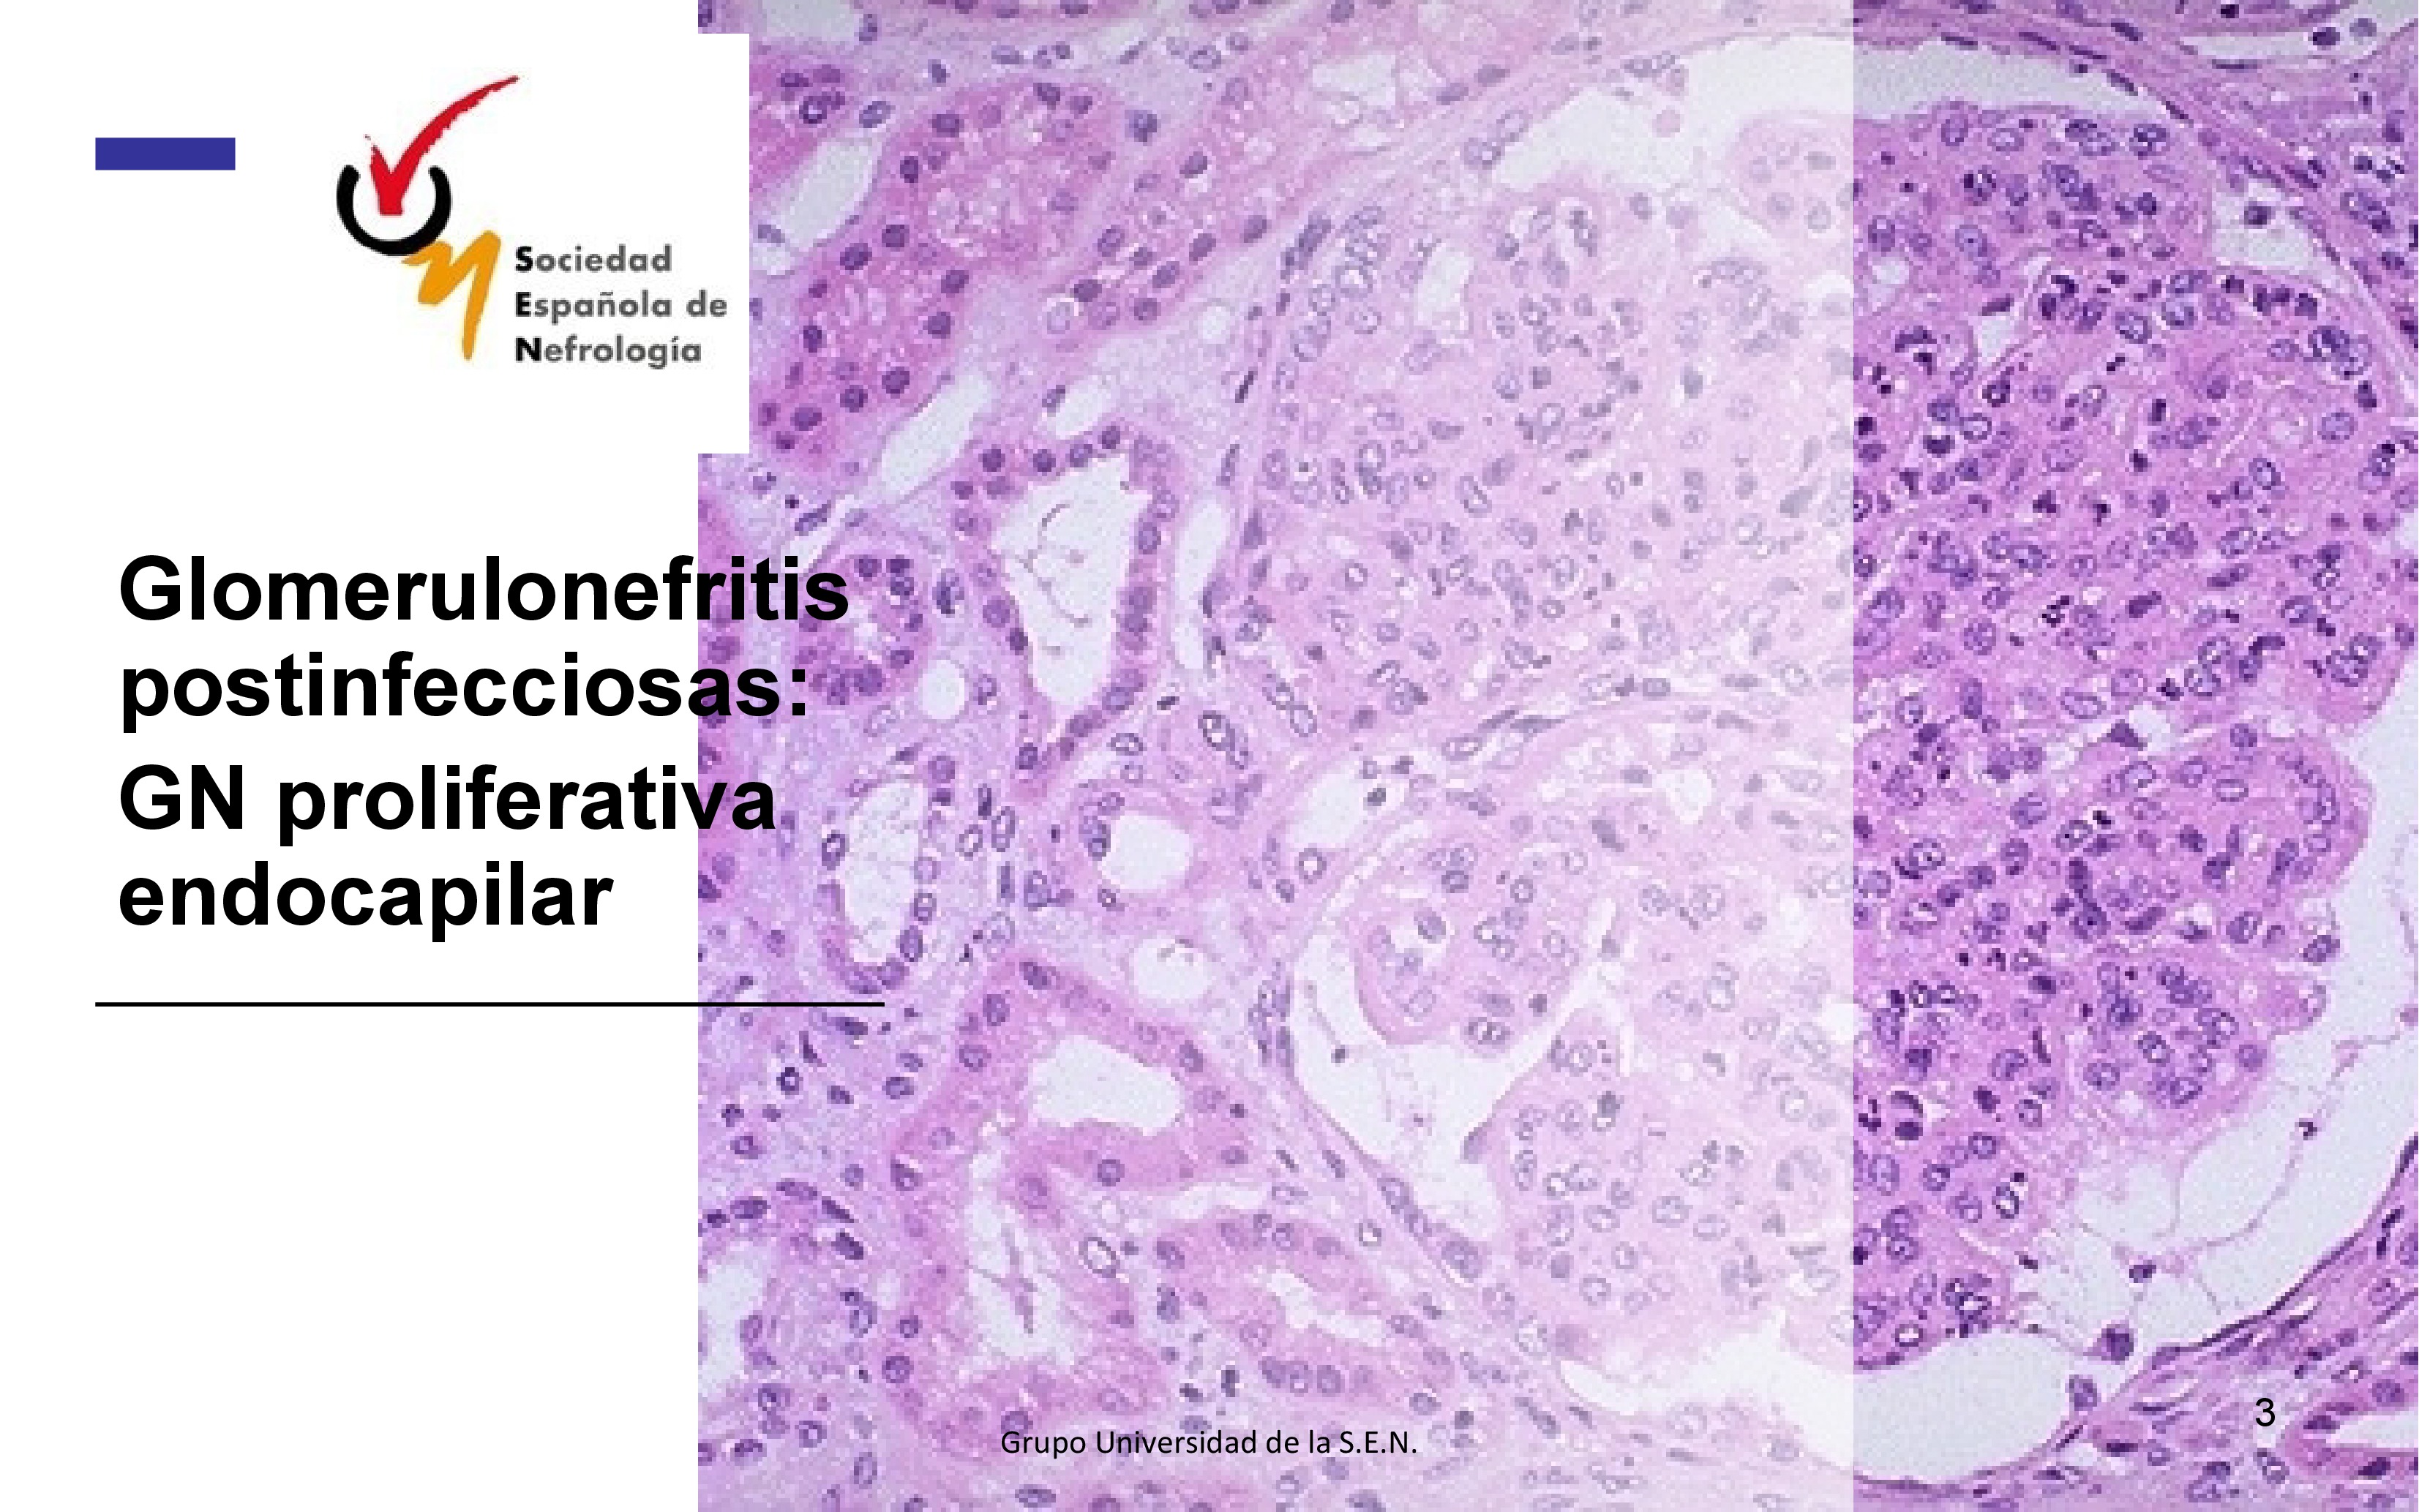 La glomerulonefritis postinfecciosa o glomerulonefritis proliferativa endocapilar como su nombre indica ocurre tras una infección